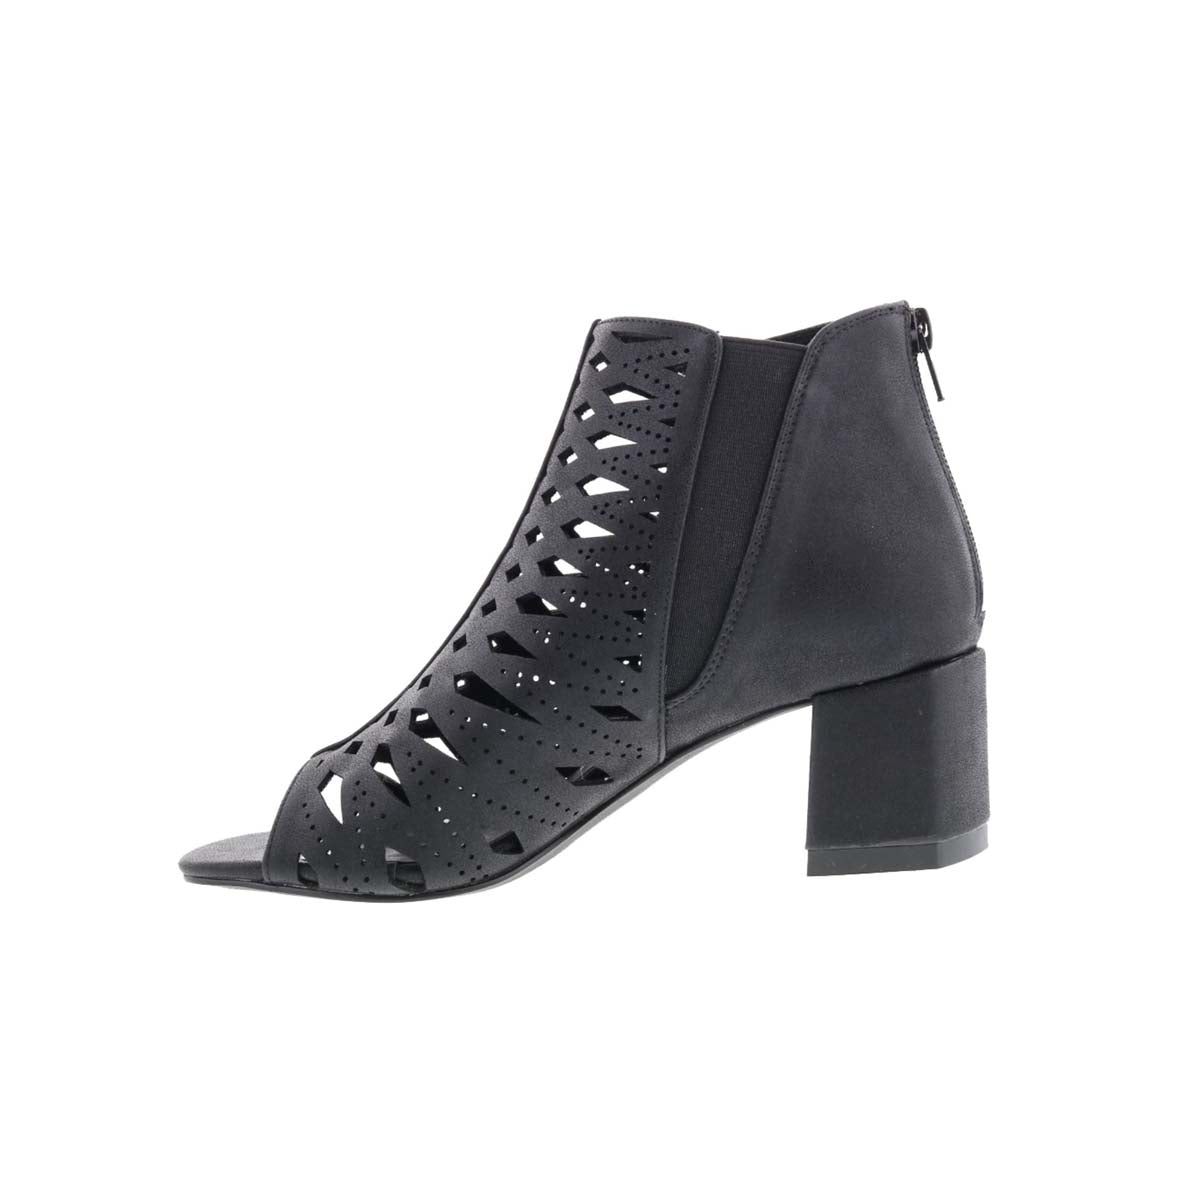 BELLINI JIST WOMEN HEELED SANDALS IN BLACK METALLIC - TLW Shoes